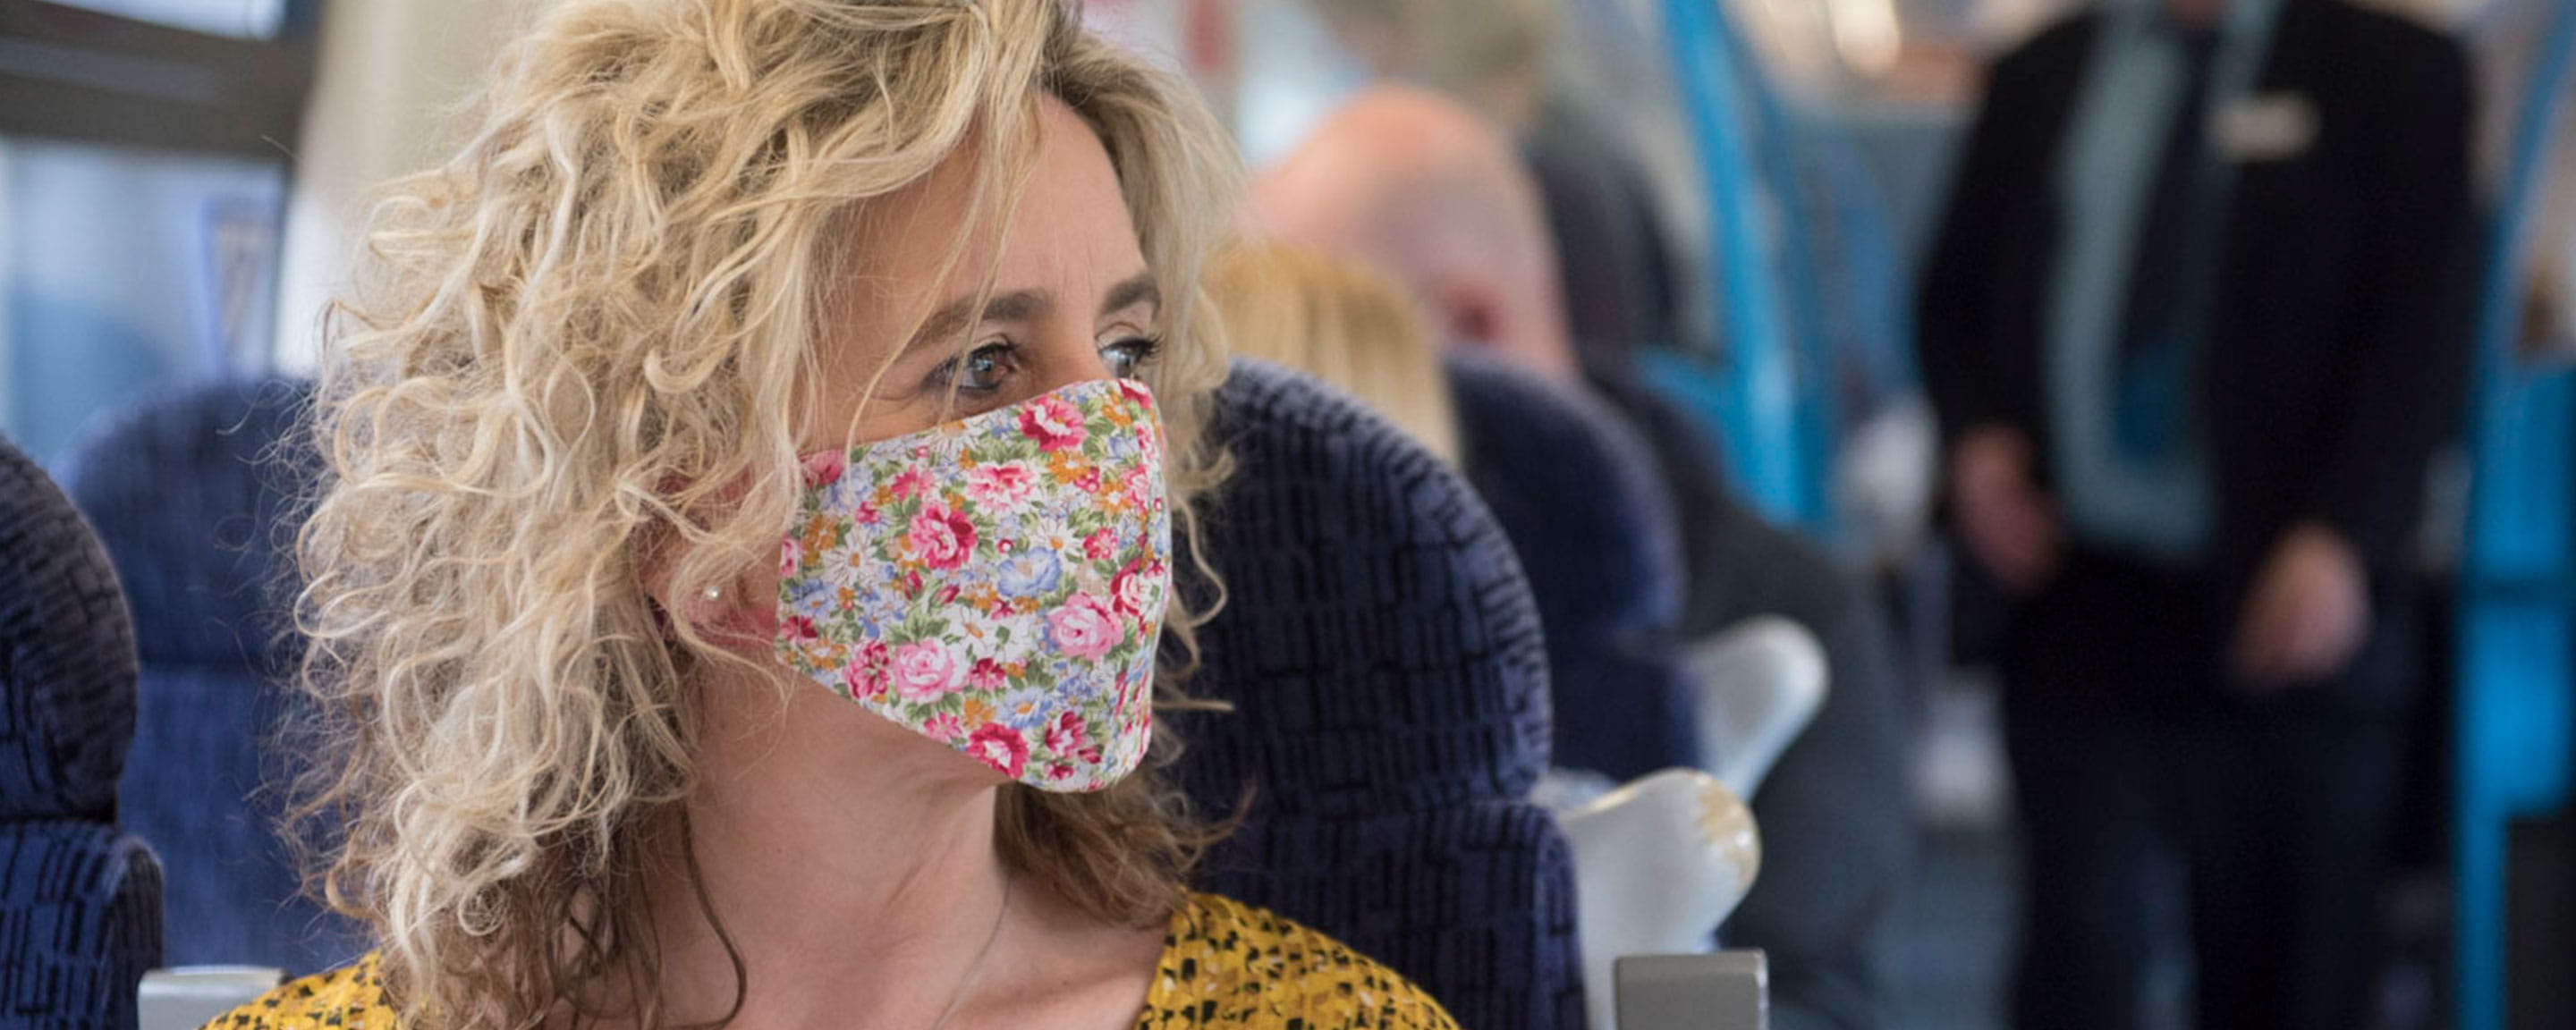 Woman wearing face mask on board train